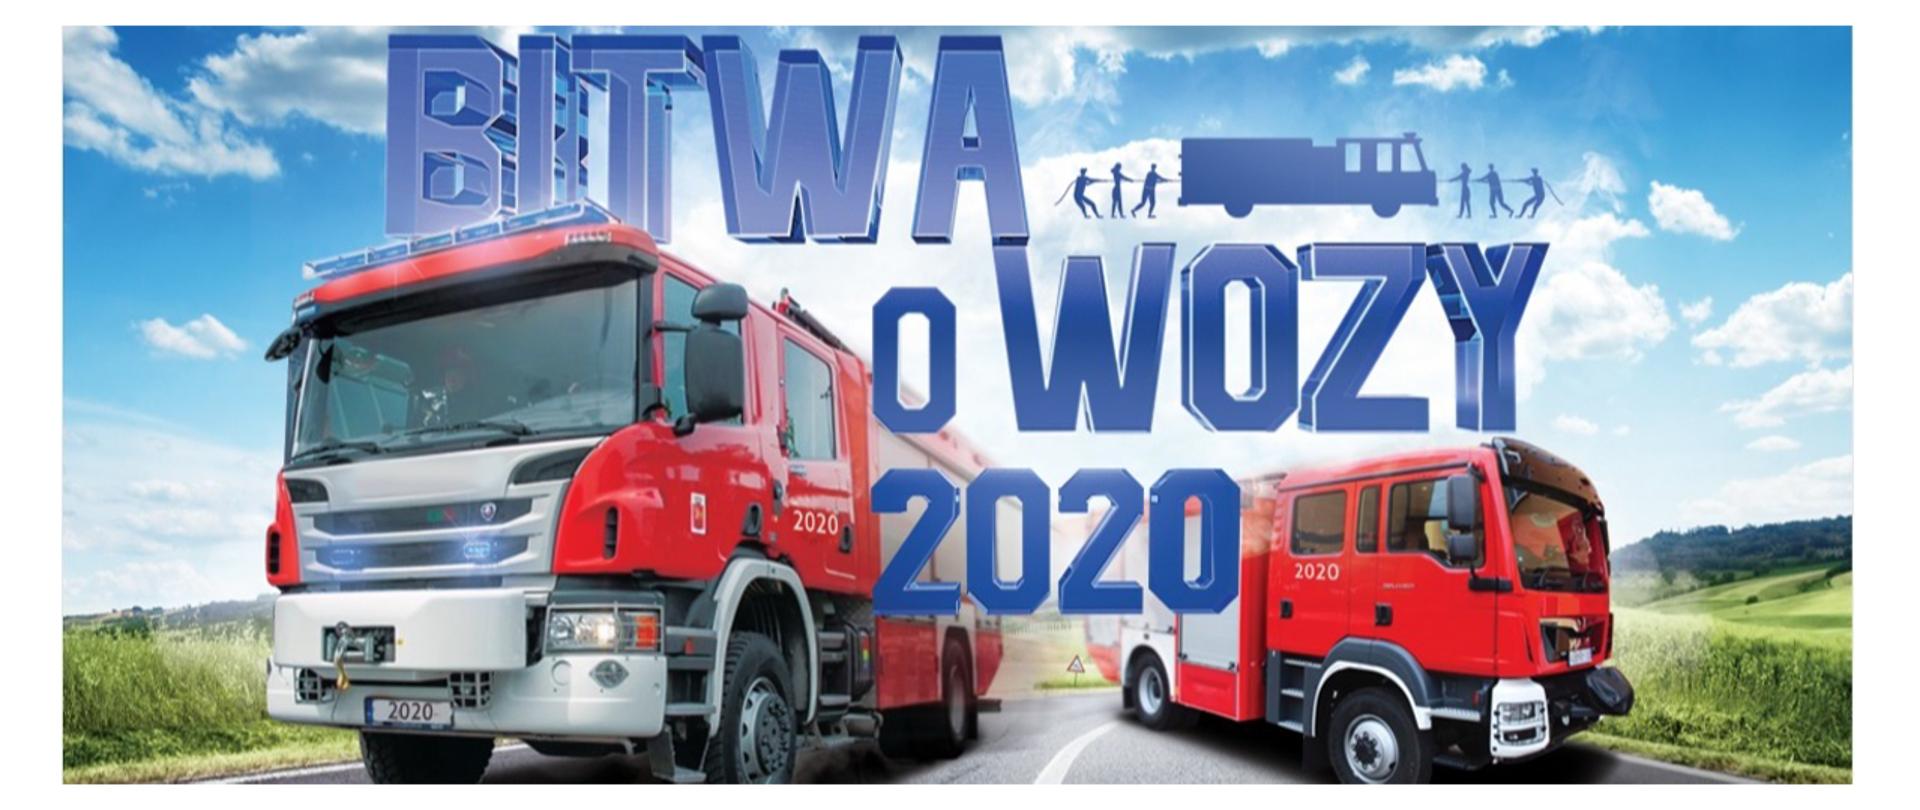 Grafika promująca akcję profrekwencyjną MSWiA, na której widnieją dwa wozy ratowniczo-gaśnicze pędzące ulicą oraz napis: "Bitwa o wozy 2020".